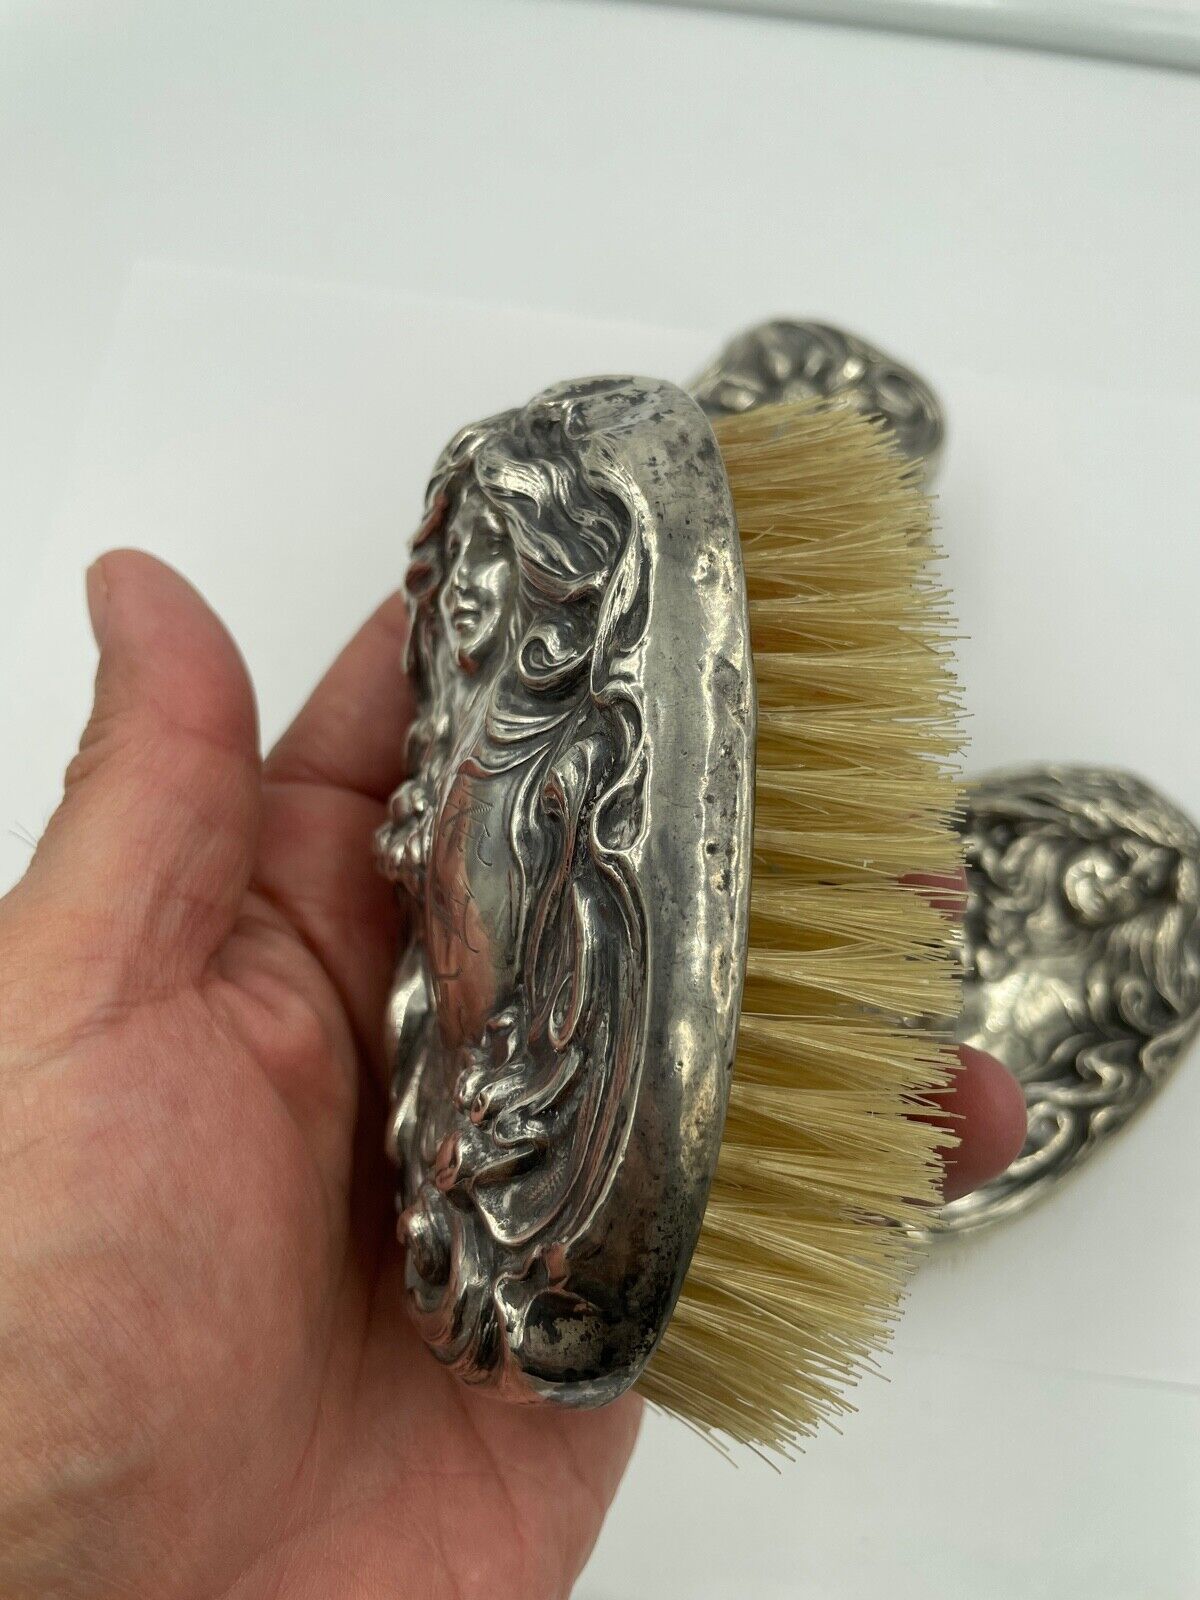 Art Nouveau Webster Sterling Silver Vanity Hair Brush set of 3 Antique